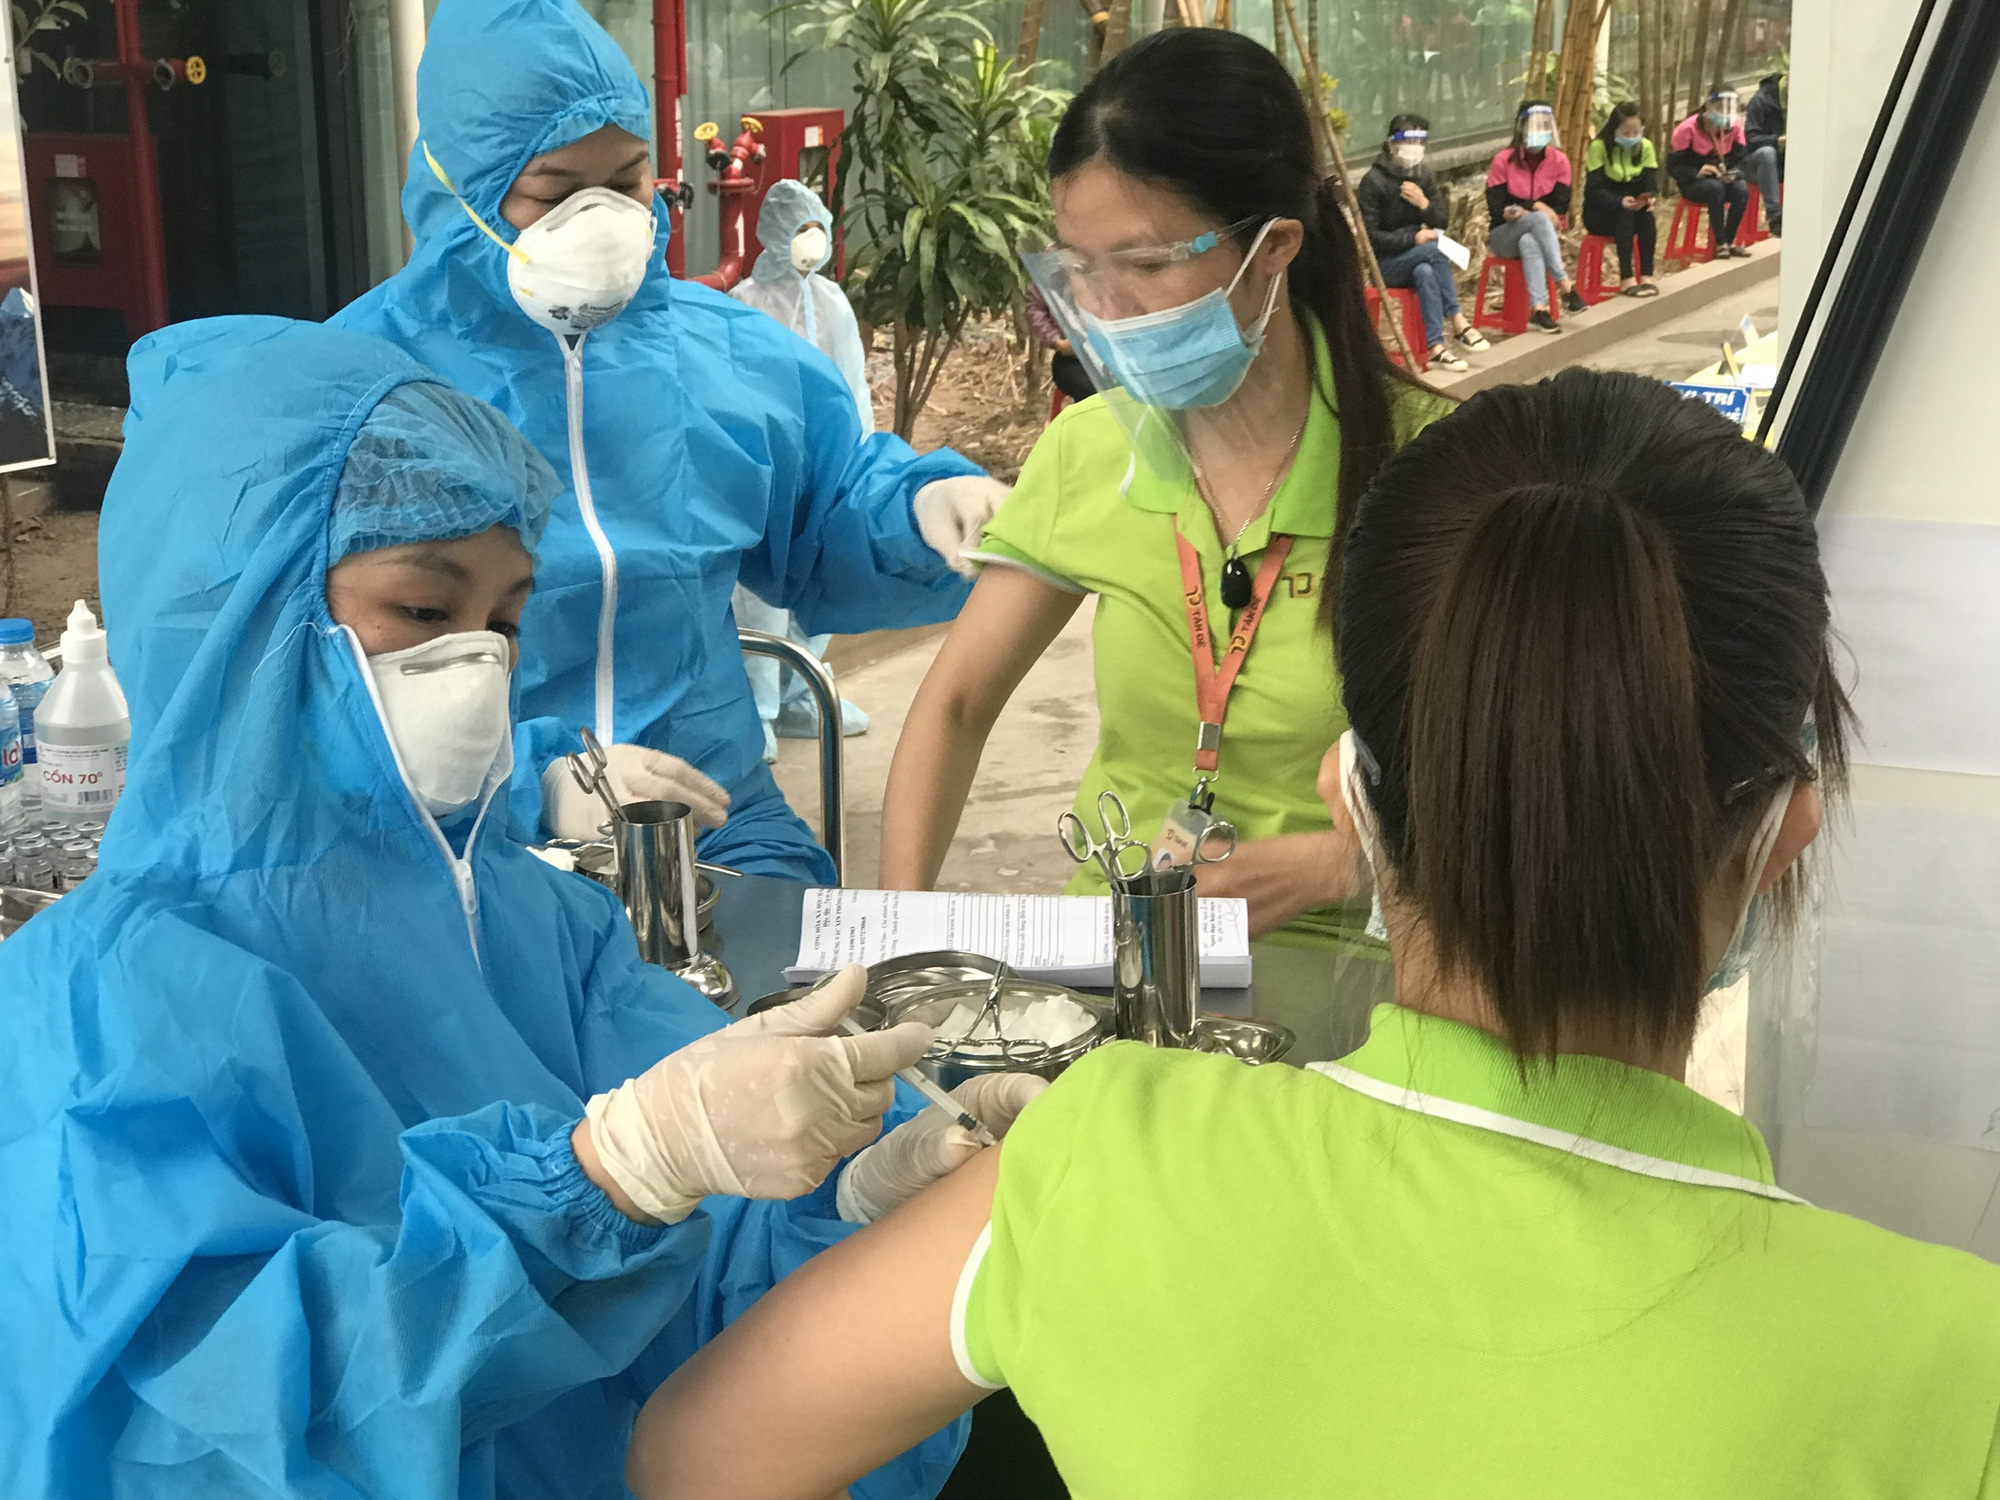 Chiều 26/1: Việt Nam đã tiếp nhận hơn 211,9 triệu liều vaccine phòng COVID-19; Đà Nẵng lập phòng khám tư vấn điều trị hậu COVID-19 - Ảnh 1.